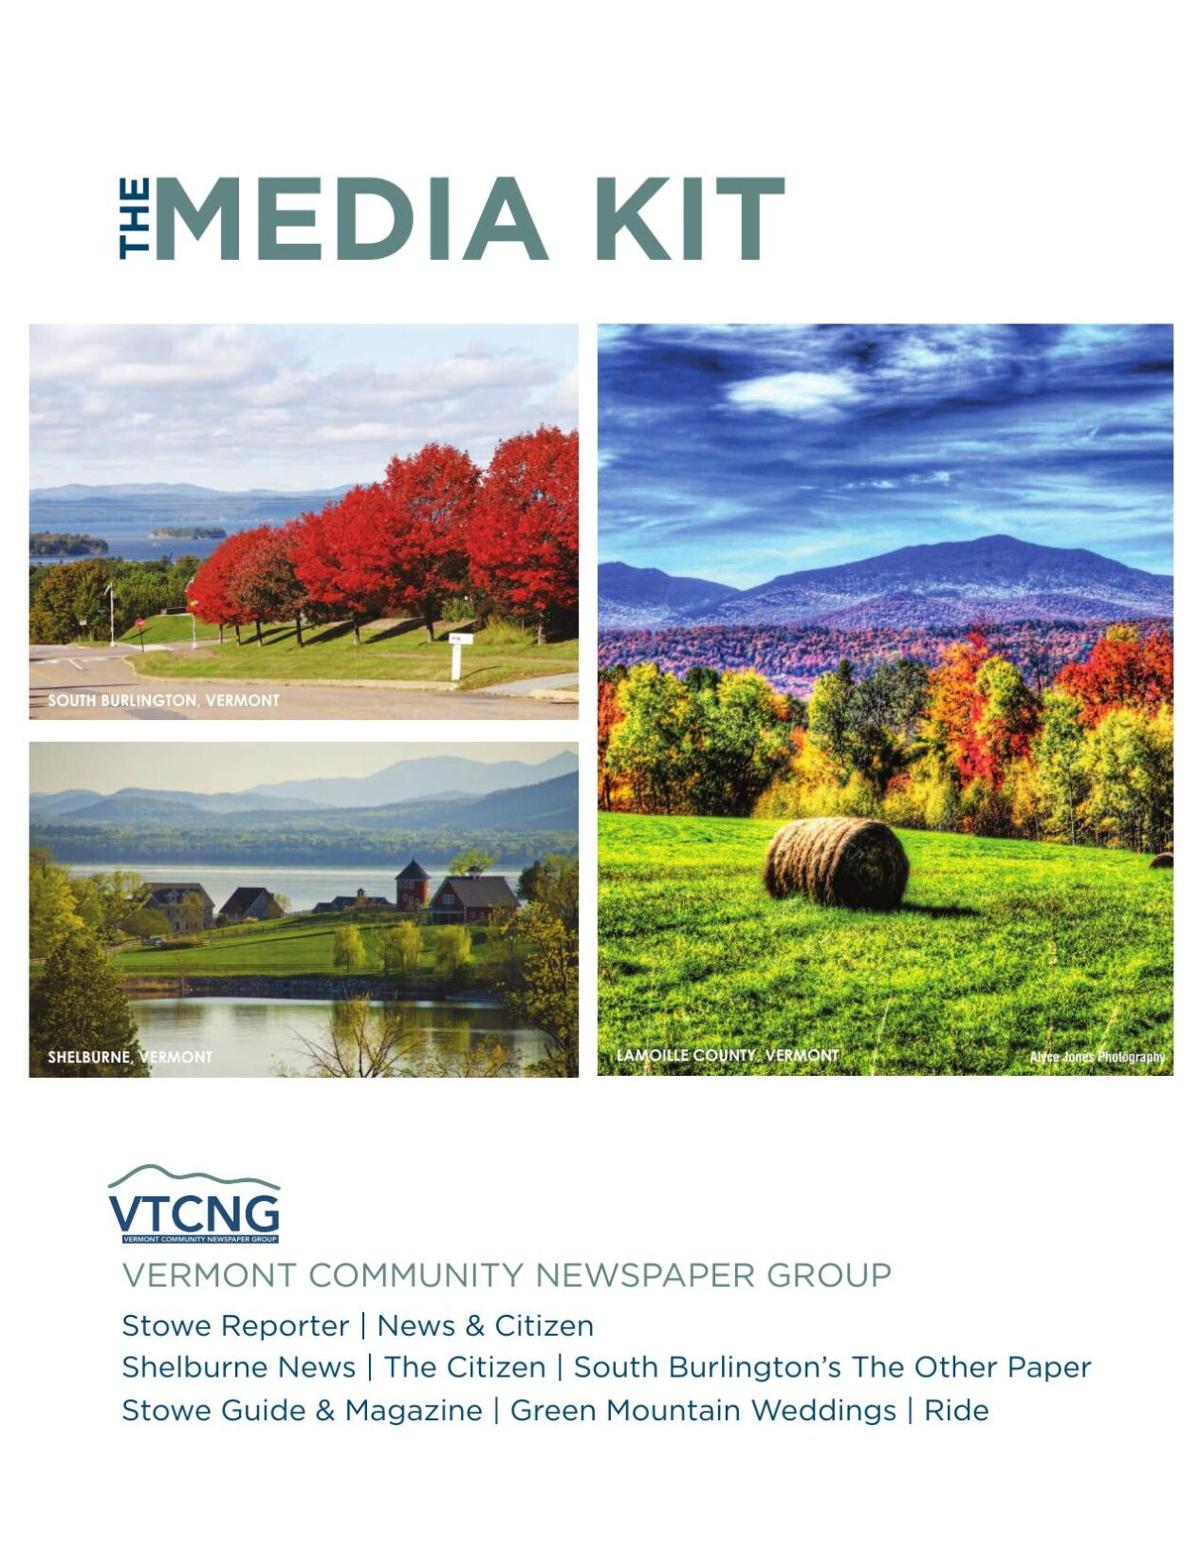 VTCNG: The Media Kit